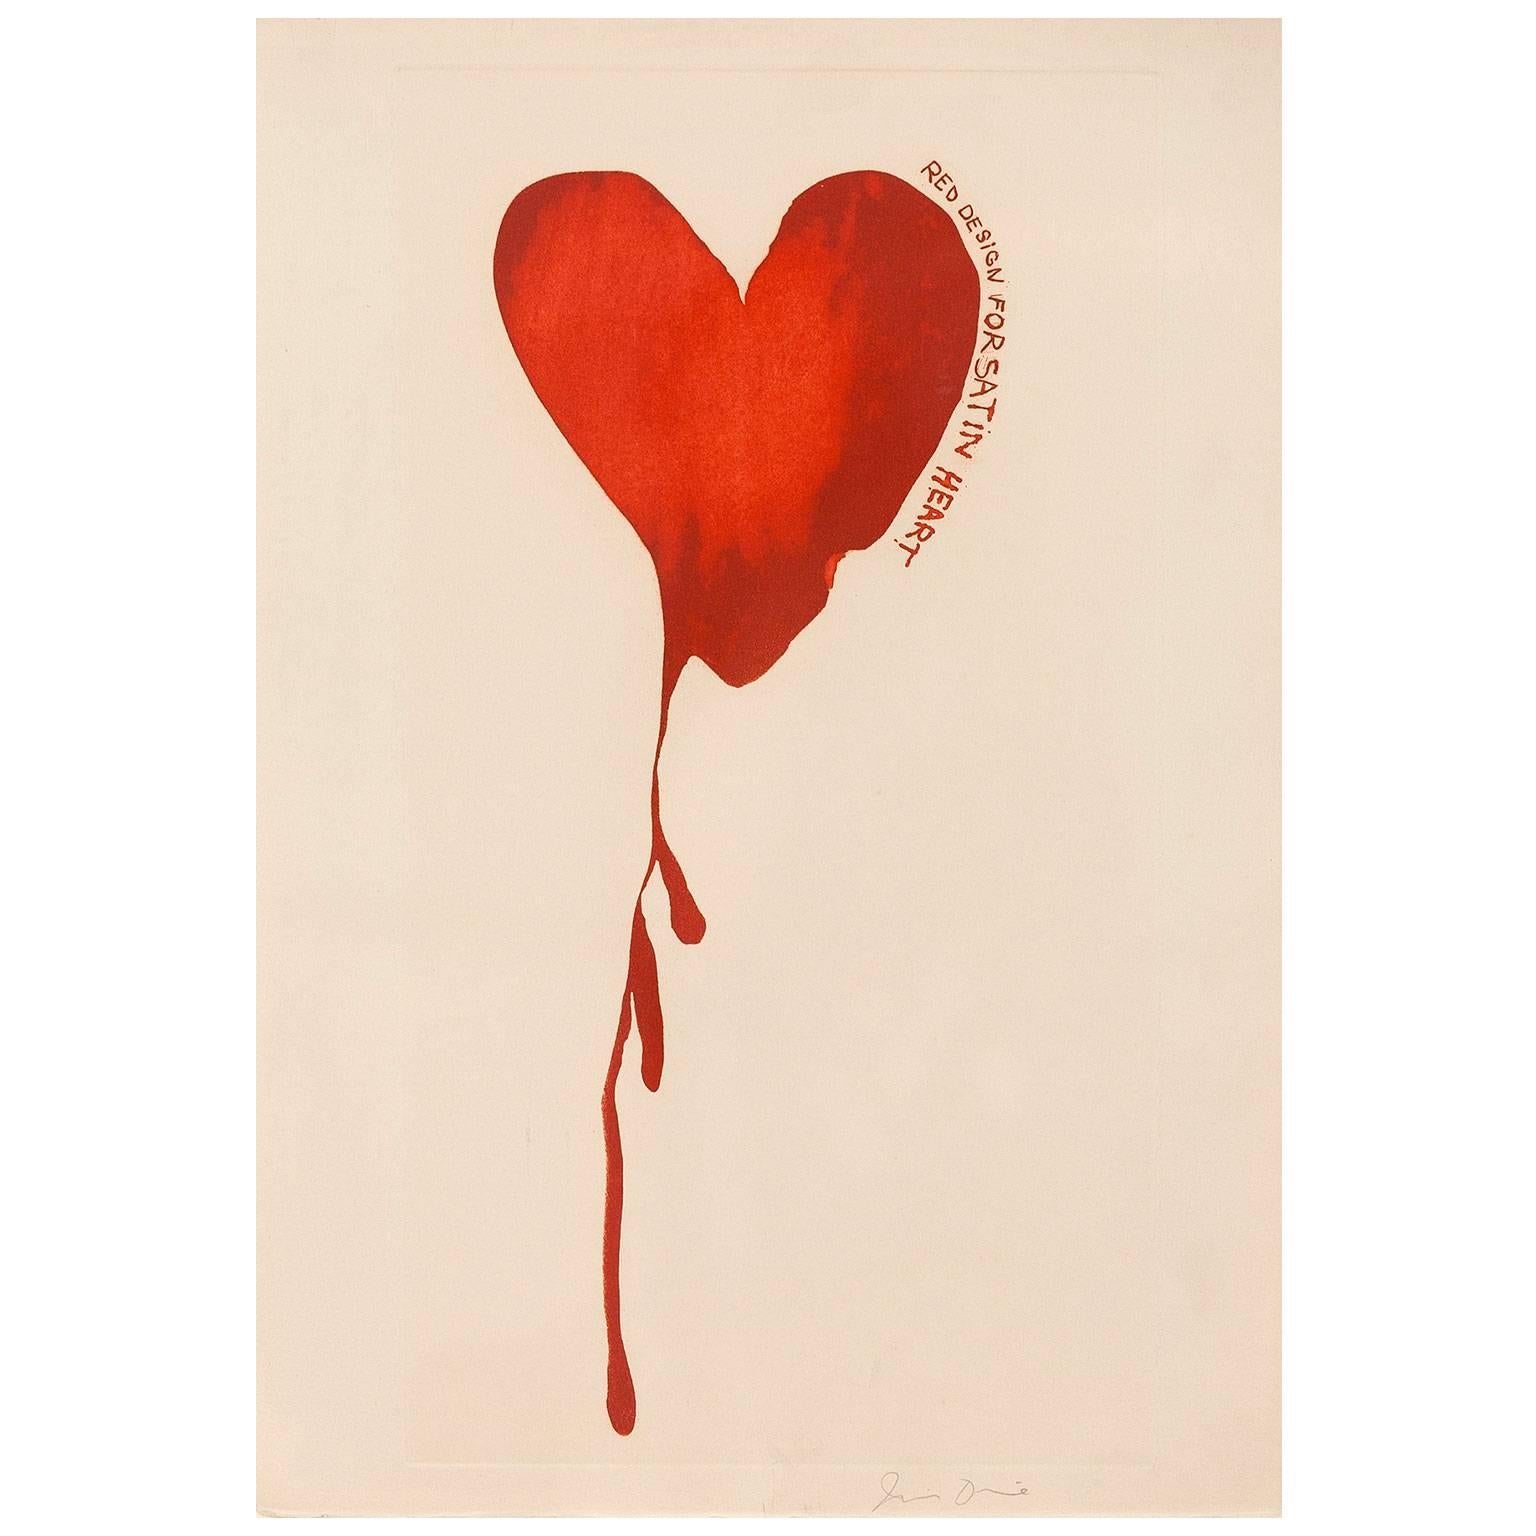 Satin Heart - Pop Art Print by Jim Dine